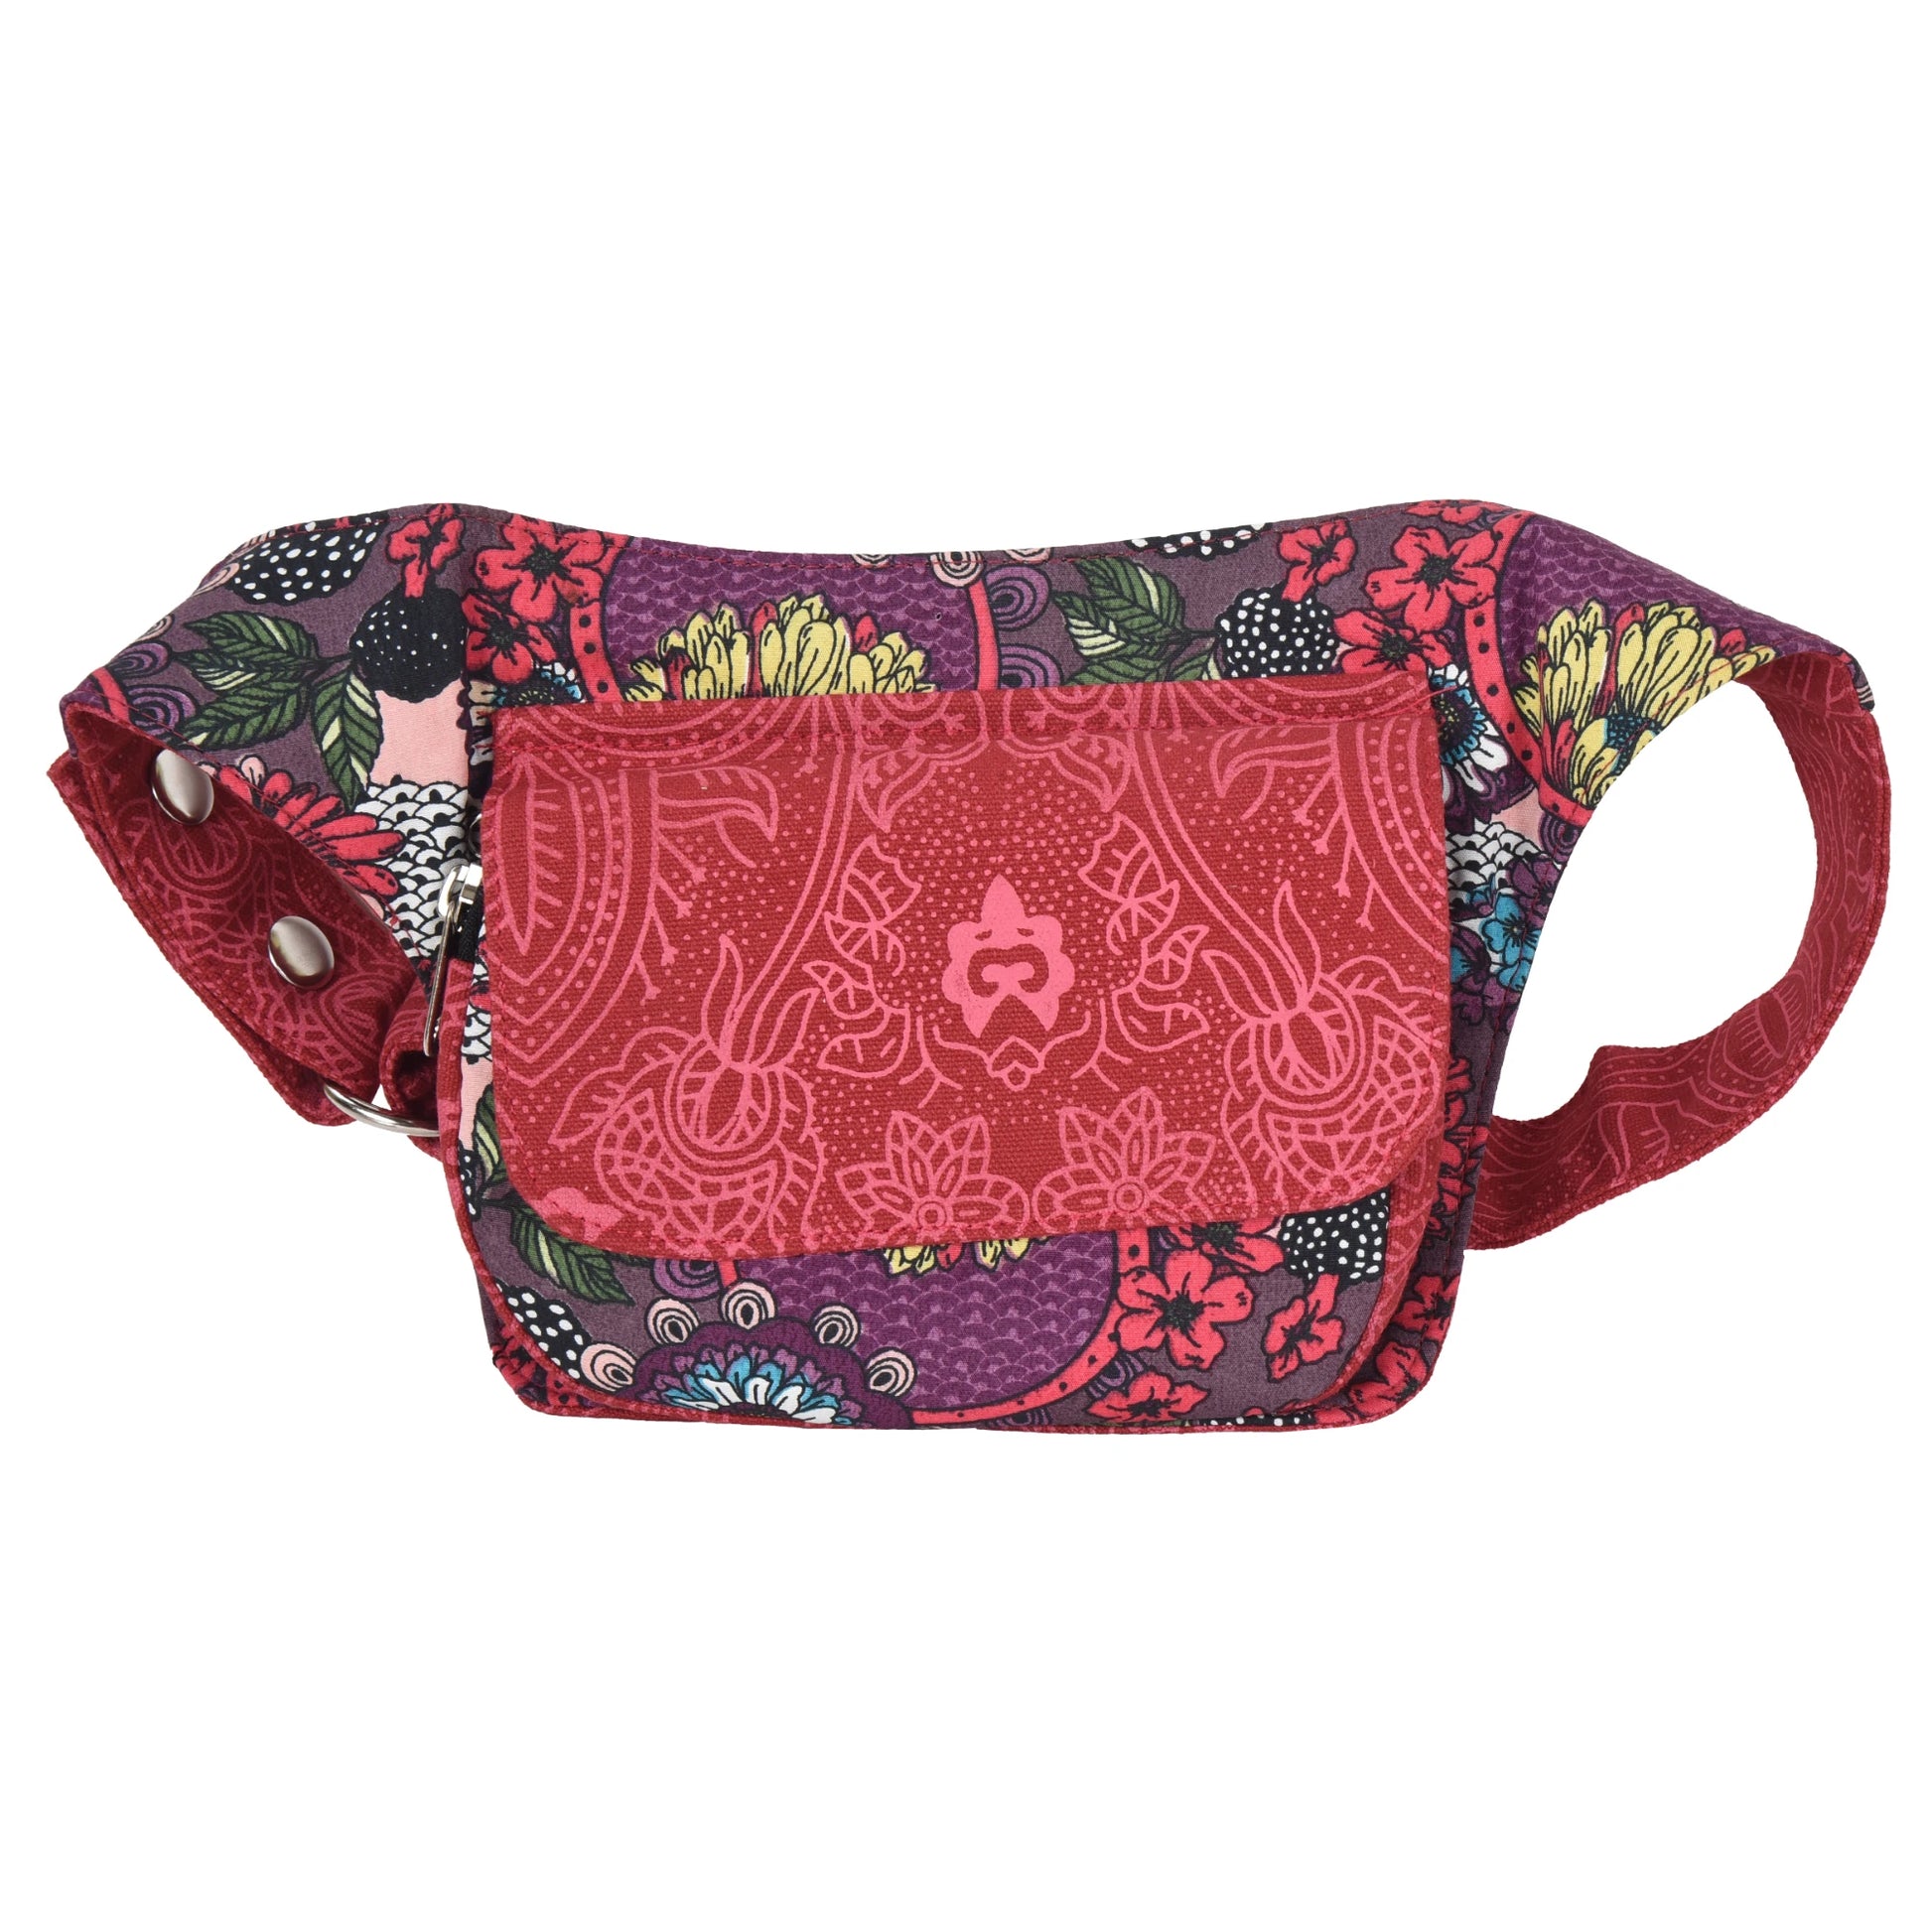 Bauchtasche Hippie Tasche in Rot mit Blumenmuster